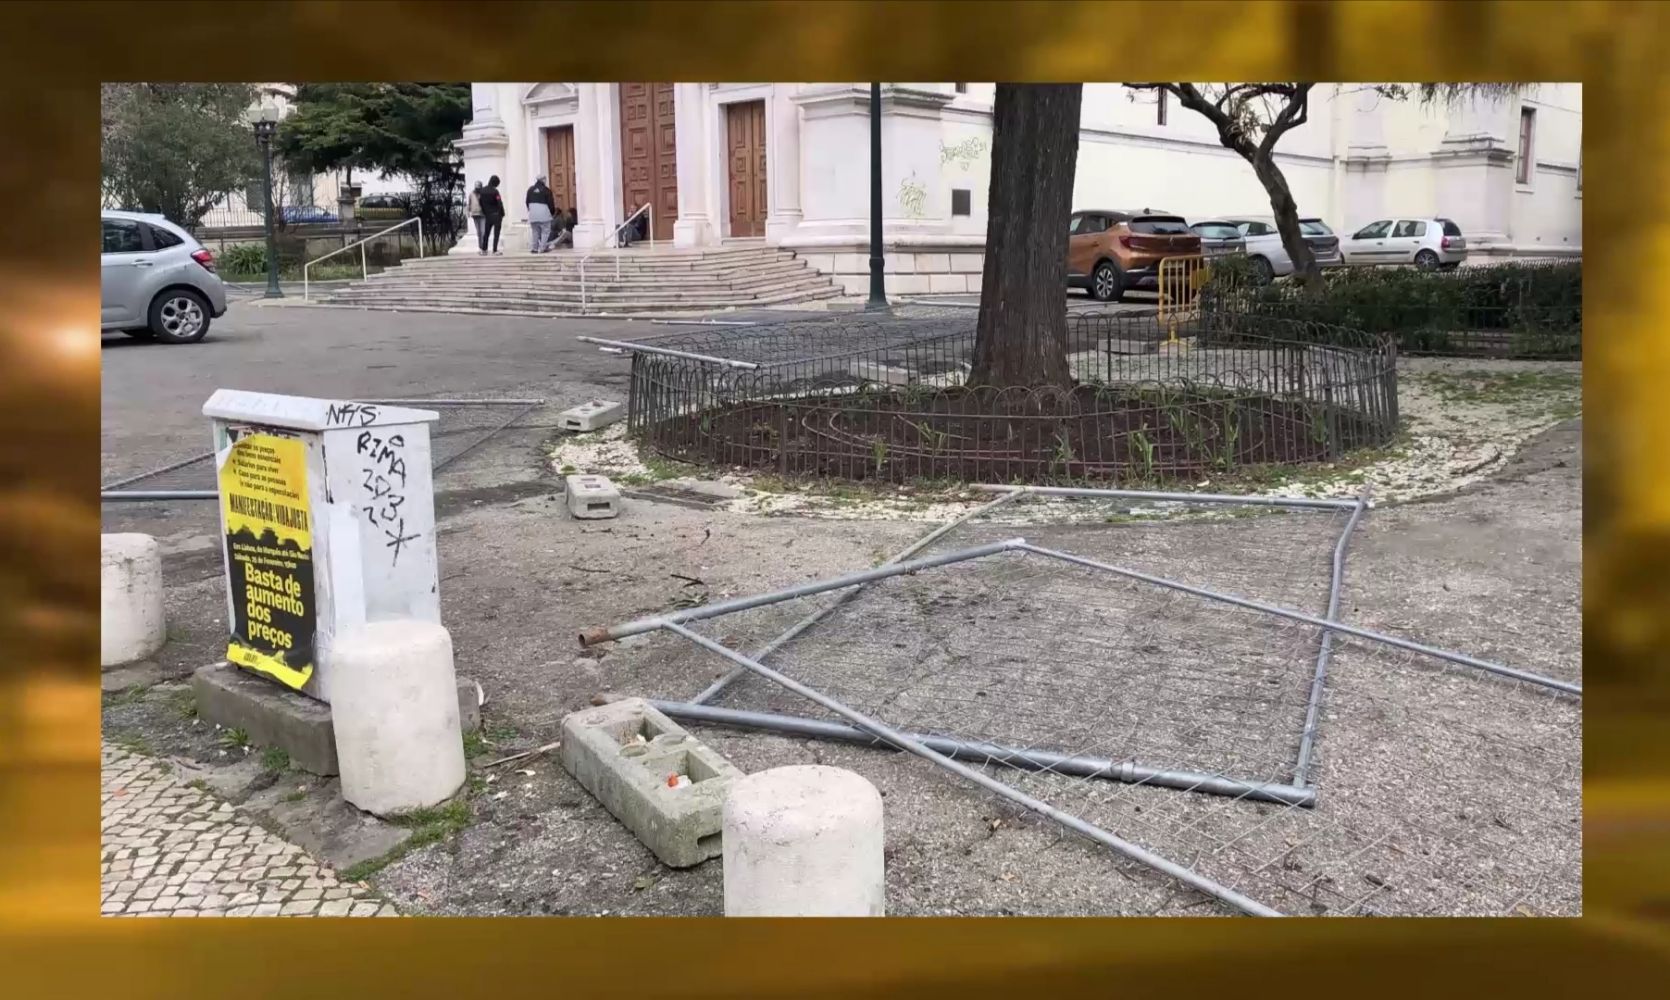 Barreiras anti sem abrigo derrubadas em Lisboa